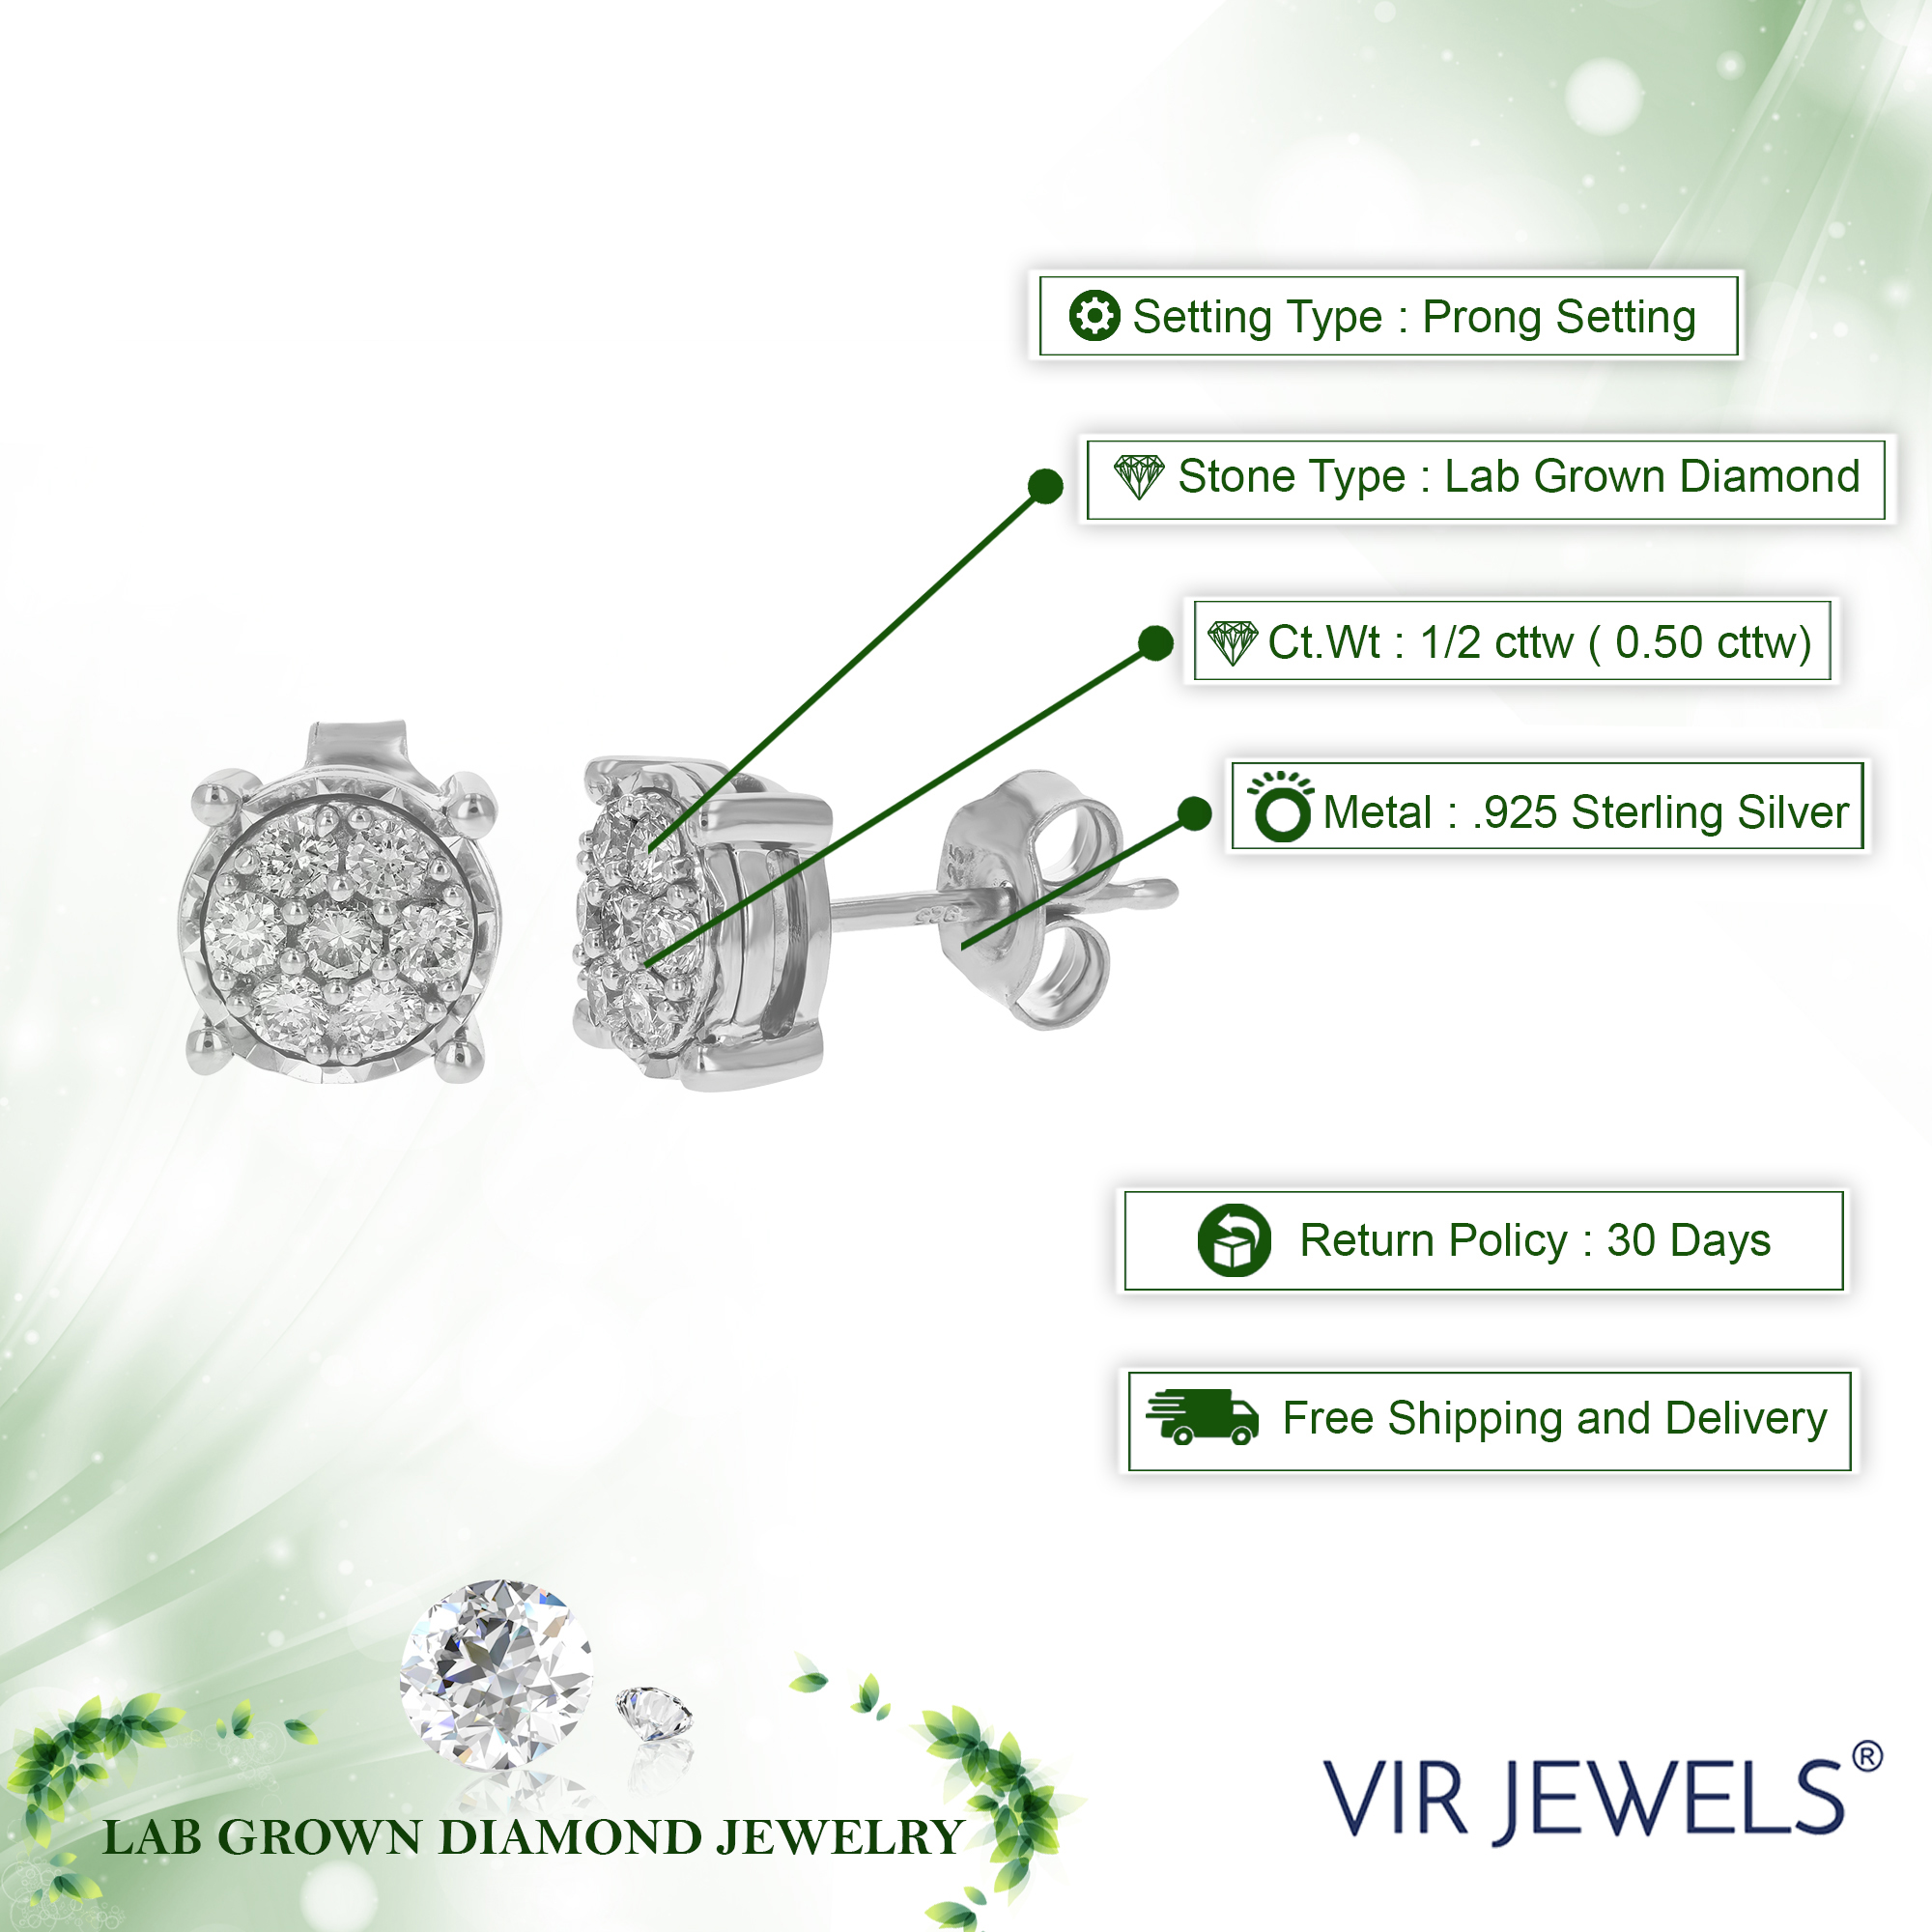 Vir Jewels 1/2 cttw Lab Grown Diamond Stud Earrings in .925 Sterling Silver Prong Set